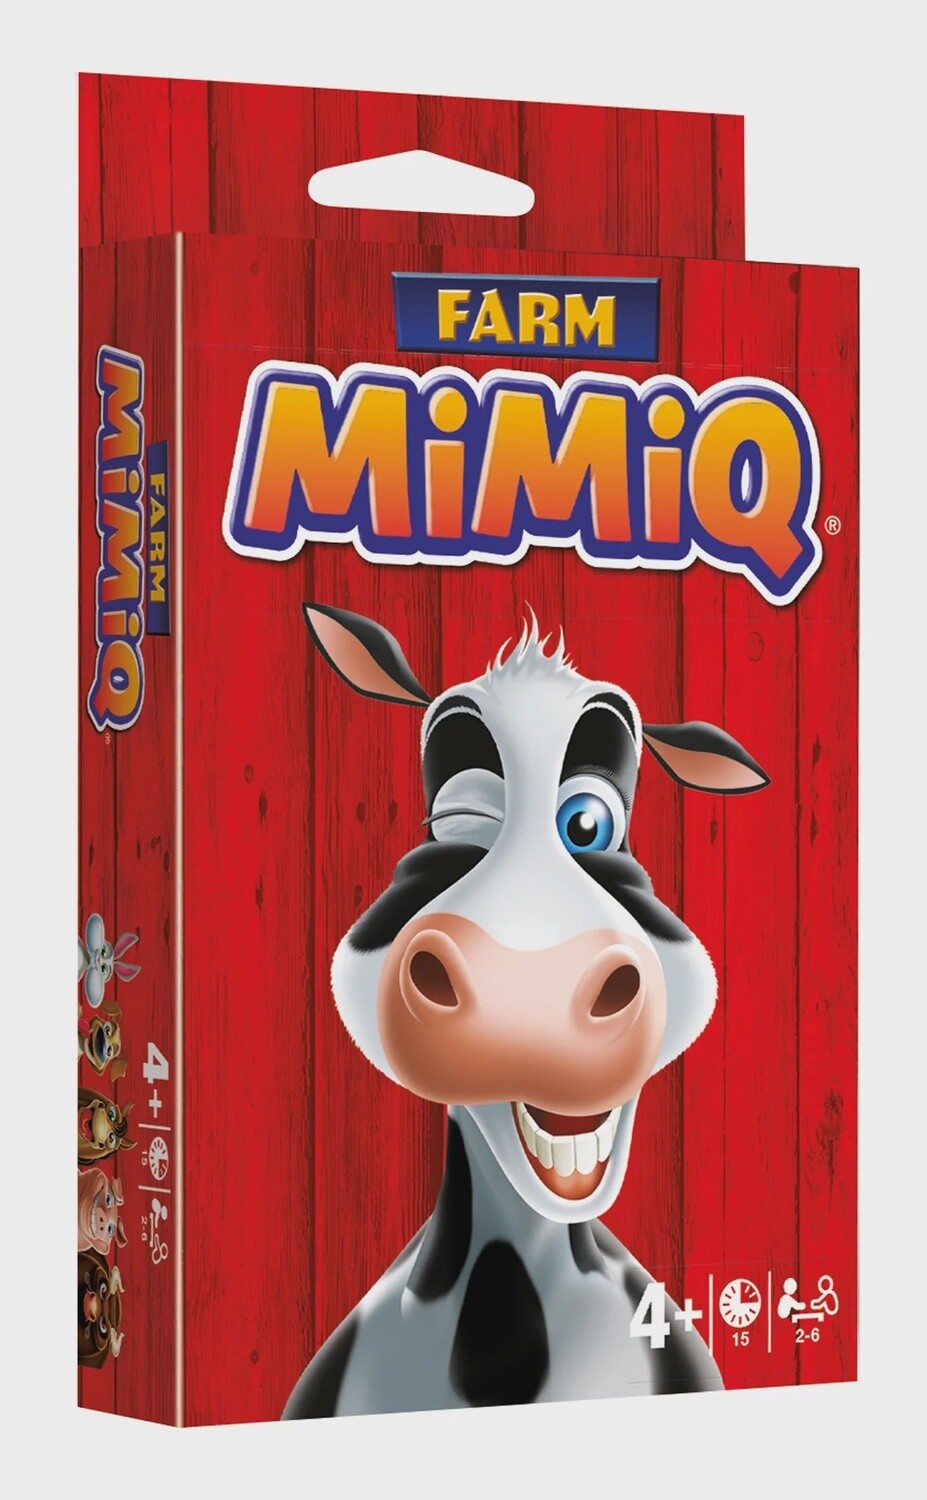 MiMiQ (Farm)